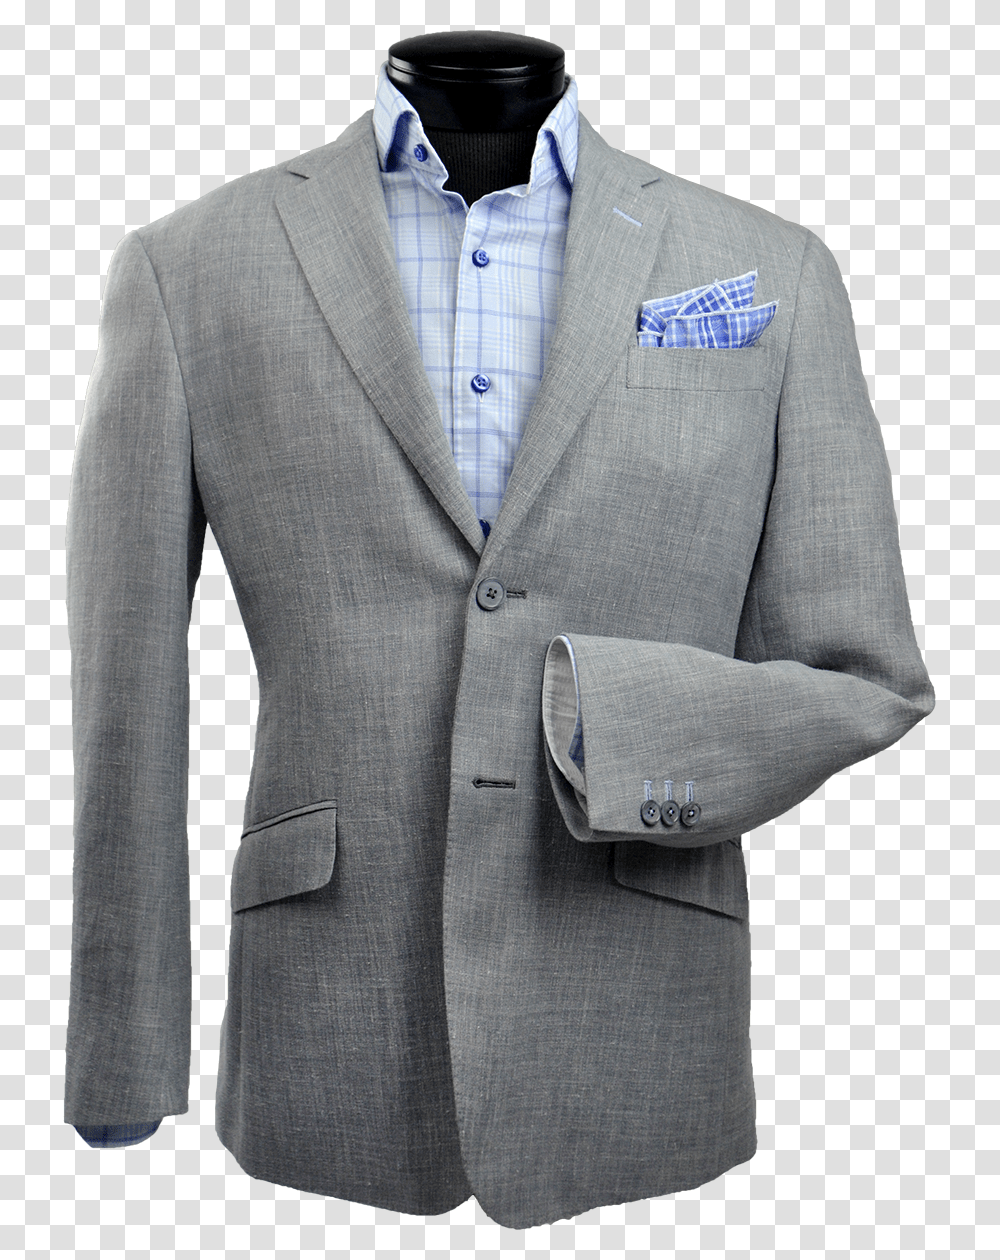 Unstructured Vs Structured Suit, Home Decor, Apparel, Linen Transparent Png